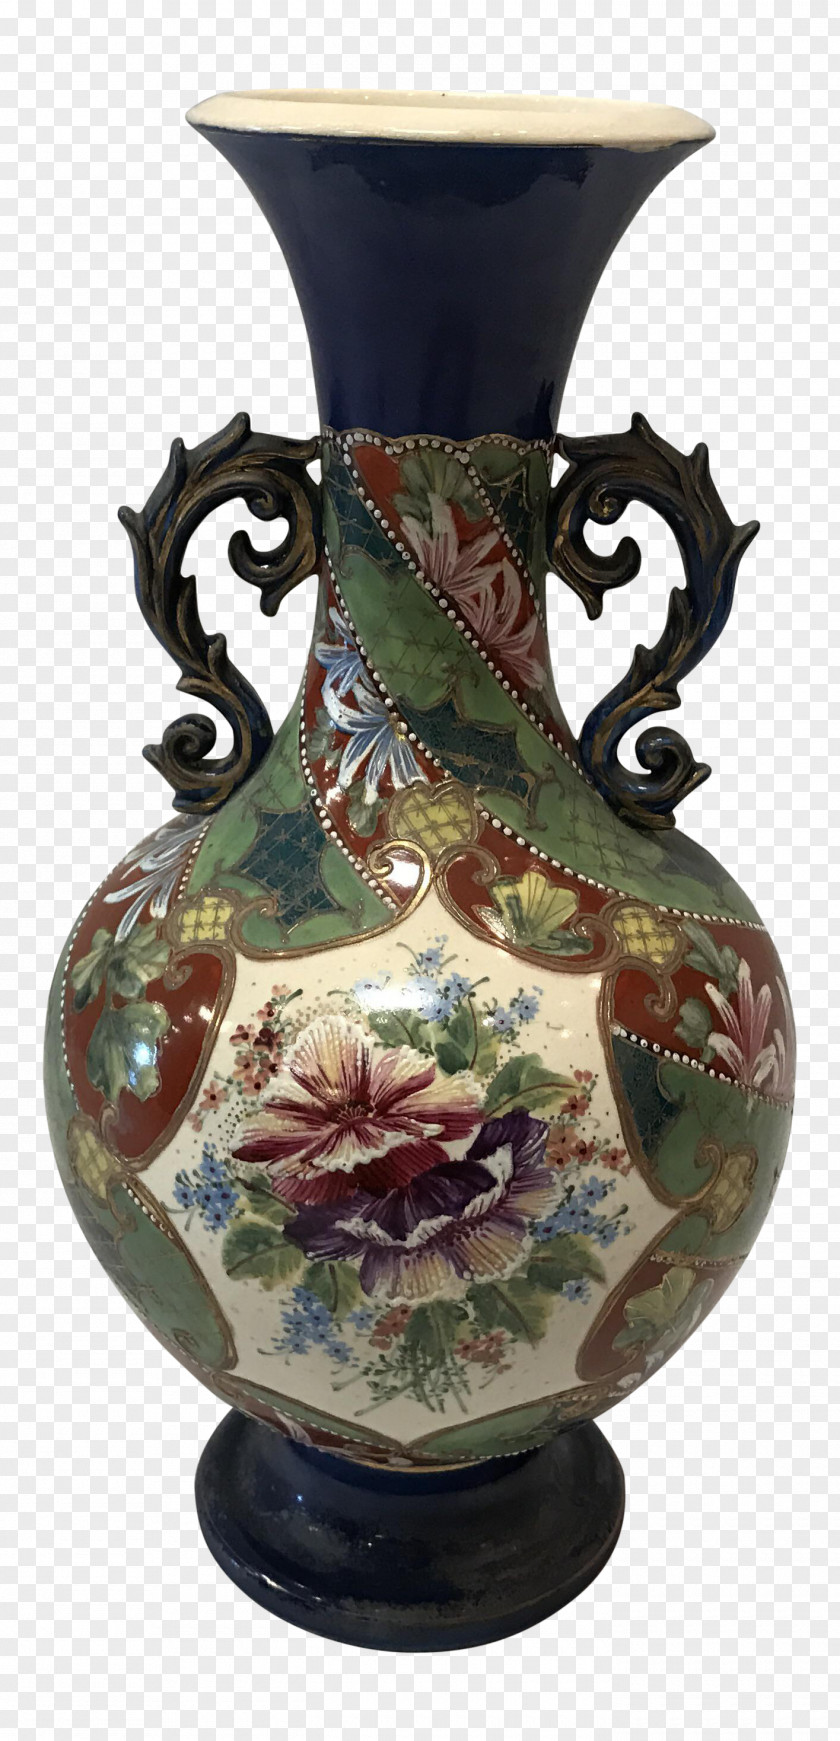 Vase Ceramic Pottery Jug Decorative Arts PNG